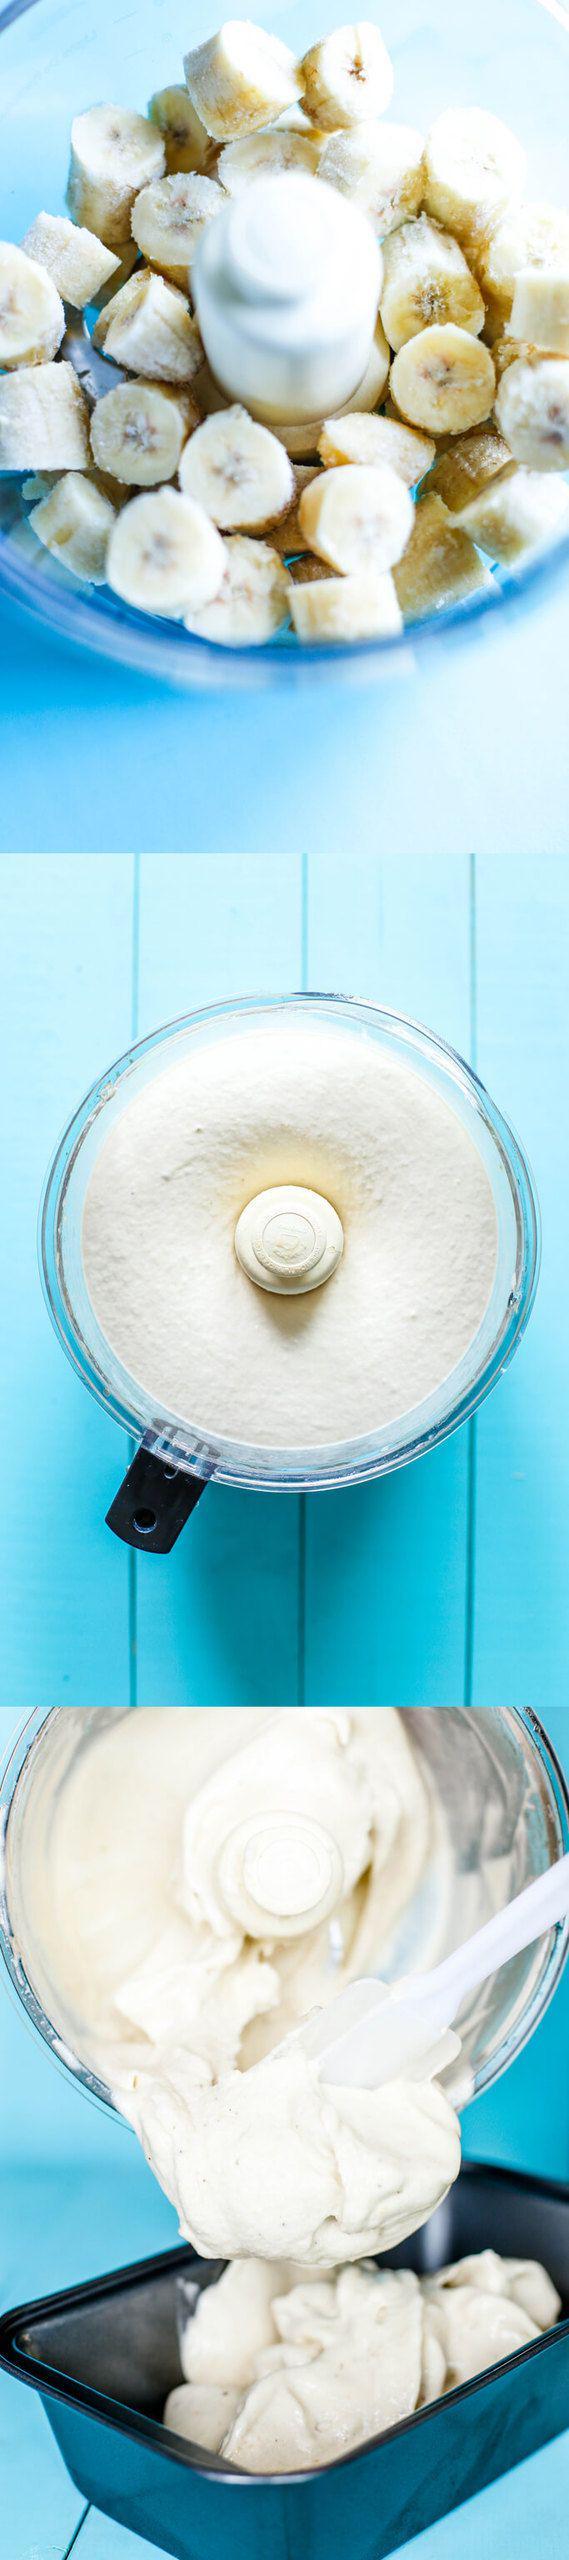 รูปภาพ:http://simplycrudelicious.com/wp-content/uploads/2016/08/Insanely-delicious-Super-creamy-naturally-sweet-1-ingredient-vanilla-Banana-nice-ice-cream-perfect-dessert-recipe-raw-vegan-glutenfree-1.jpg